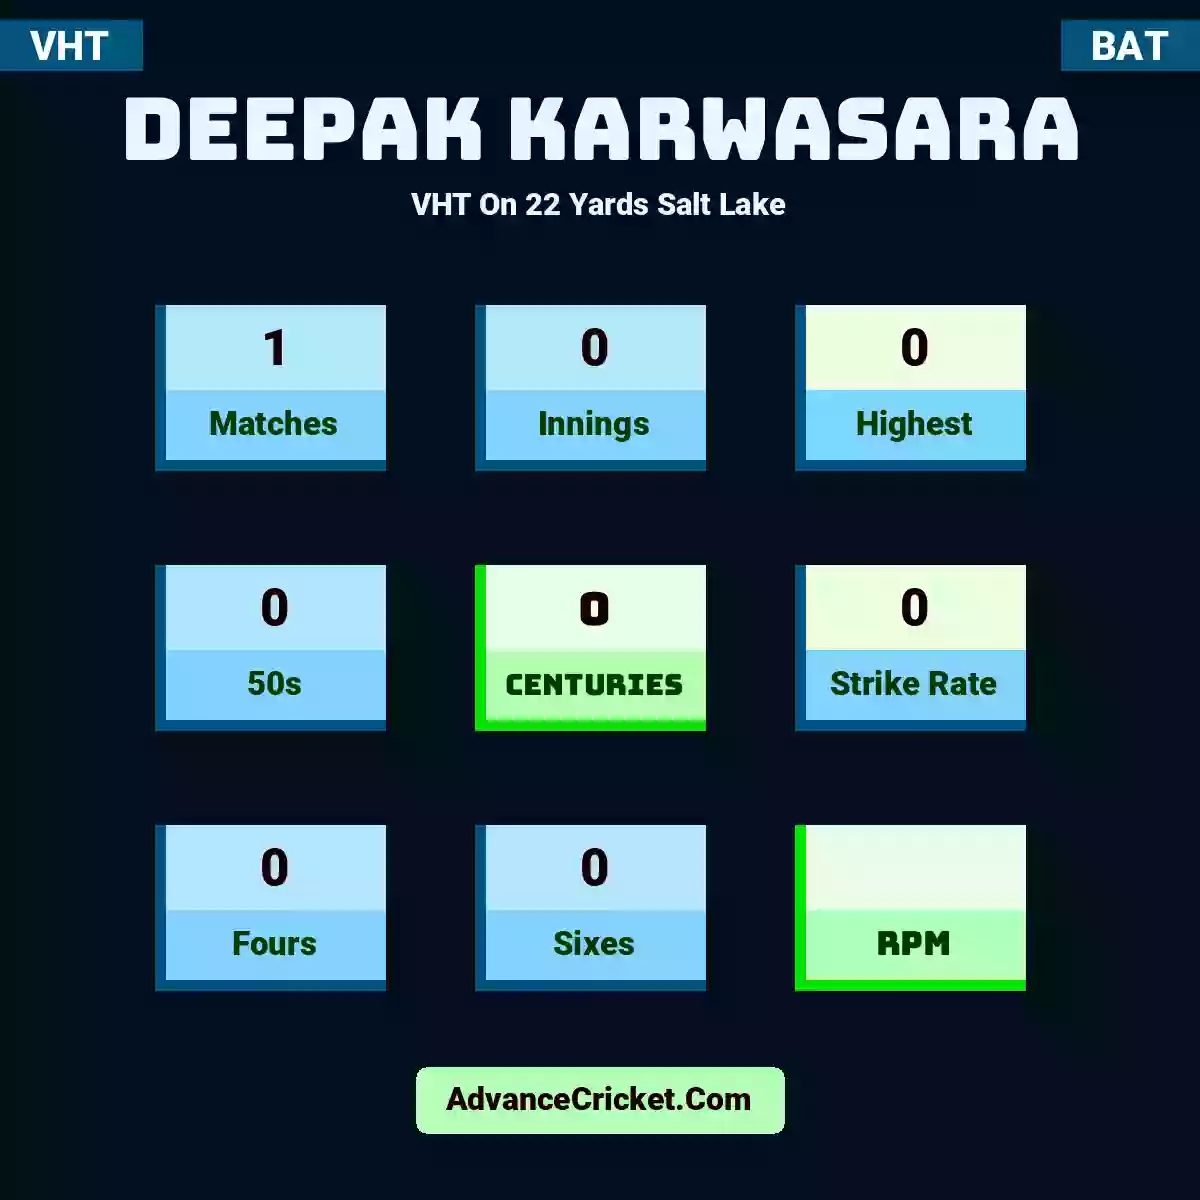 Deepak Karwasara VHT  On 22 Yards Salt Lake, Deepak Karwasara played 1 matches, scored 0 runs as highest, 0 half-centuries, and 0 centuries, with a strike rate of 0. D.Karwasara hit 0 fours and 0 sixes.